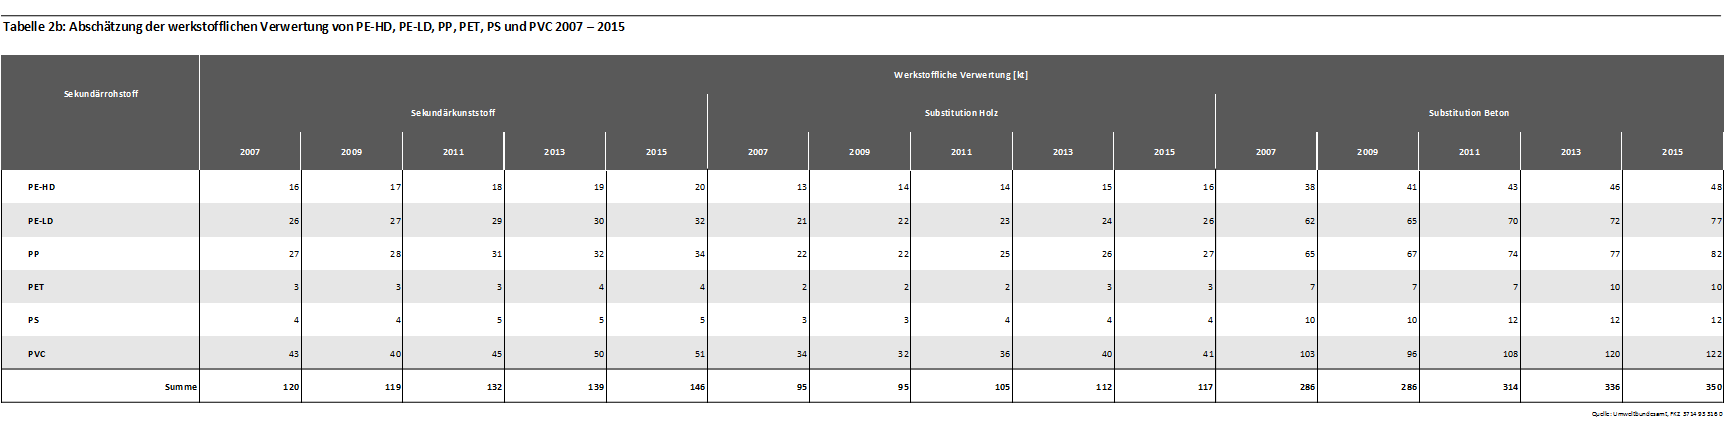 Tabelle 2b: Abschätzung der werkstofflichen Verwertung von PE-HD, PE-LD, PP, PET, PS und PVC 2007 – 2015